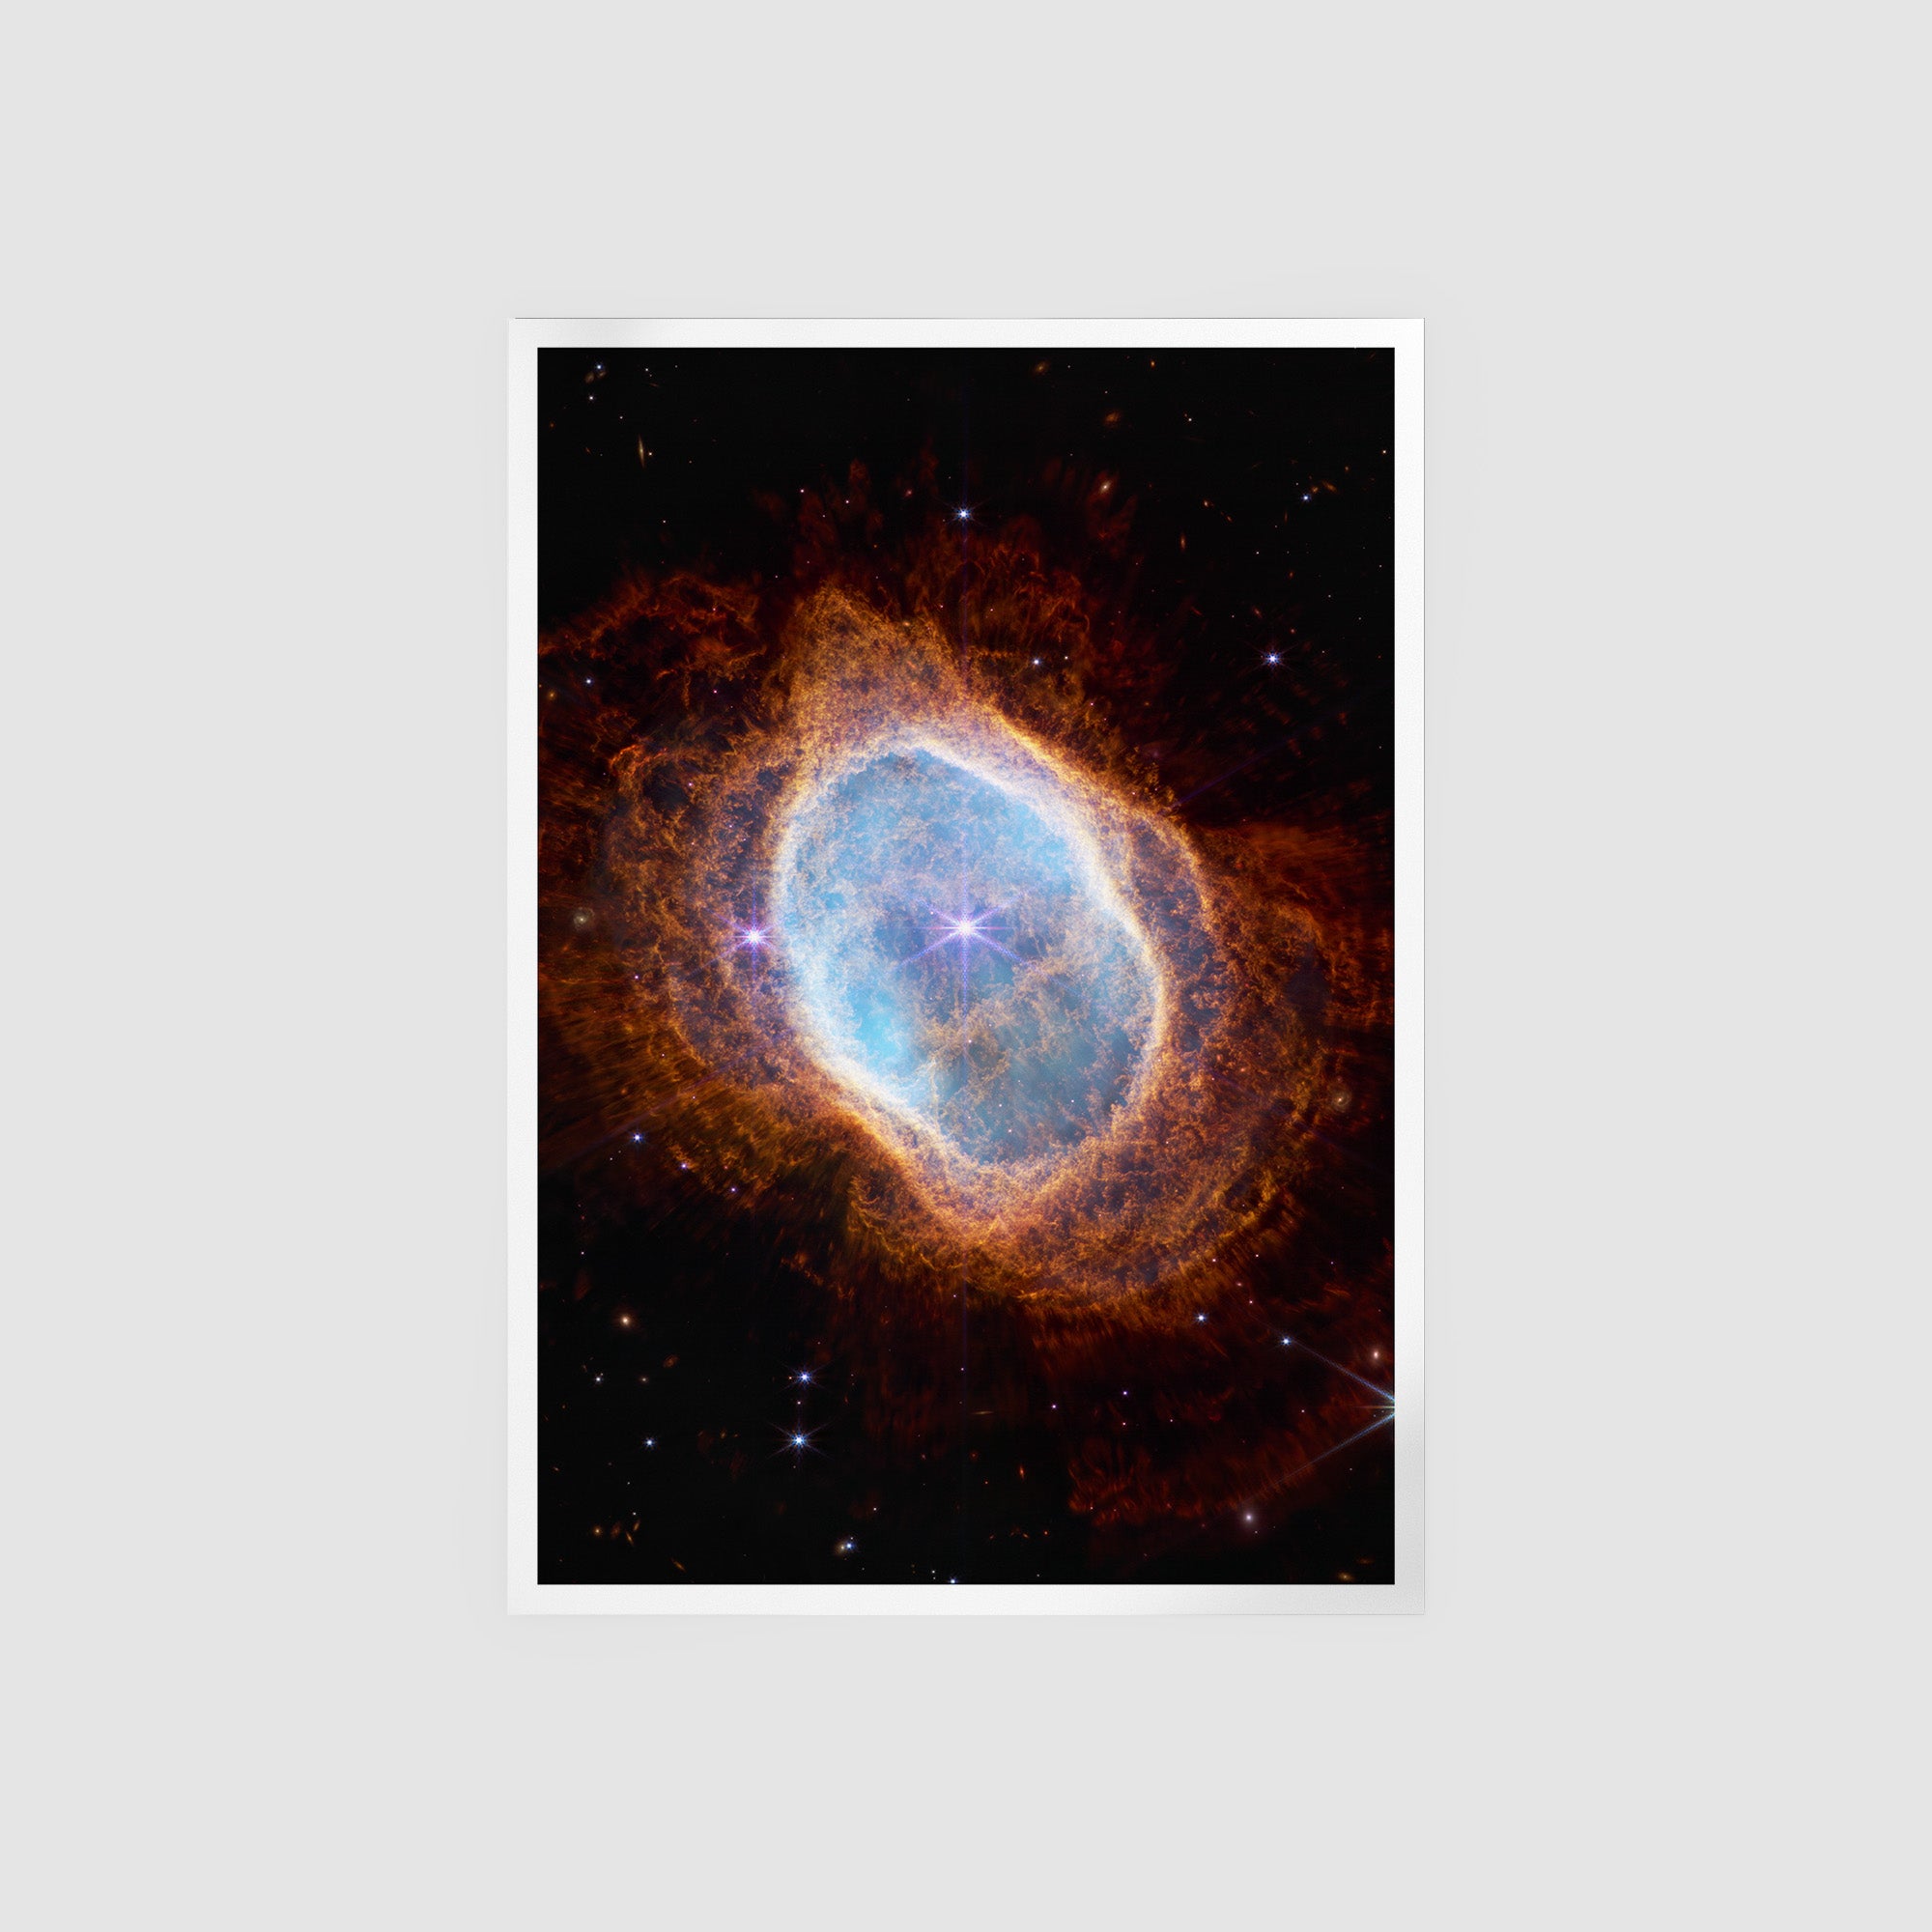 Southern Ring Nebula